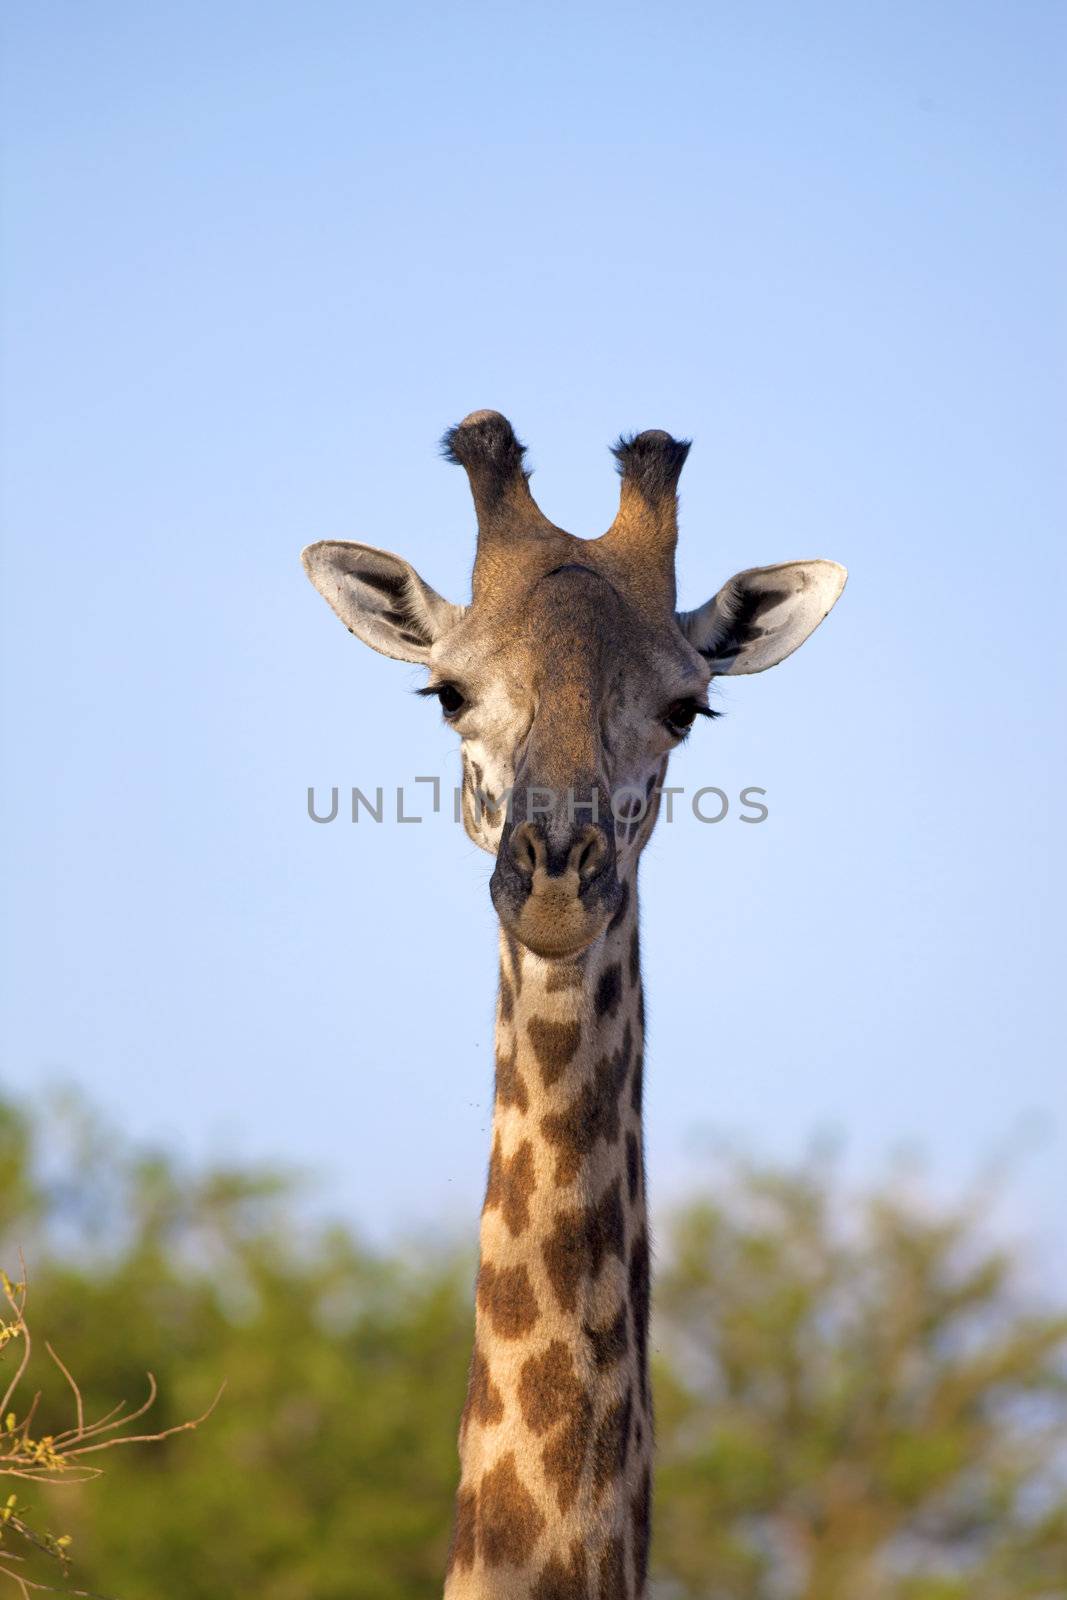 Wild Giraffe in the savannah in Mikumi, Tanzania